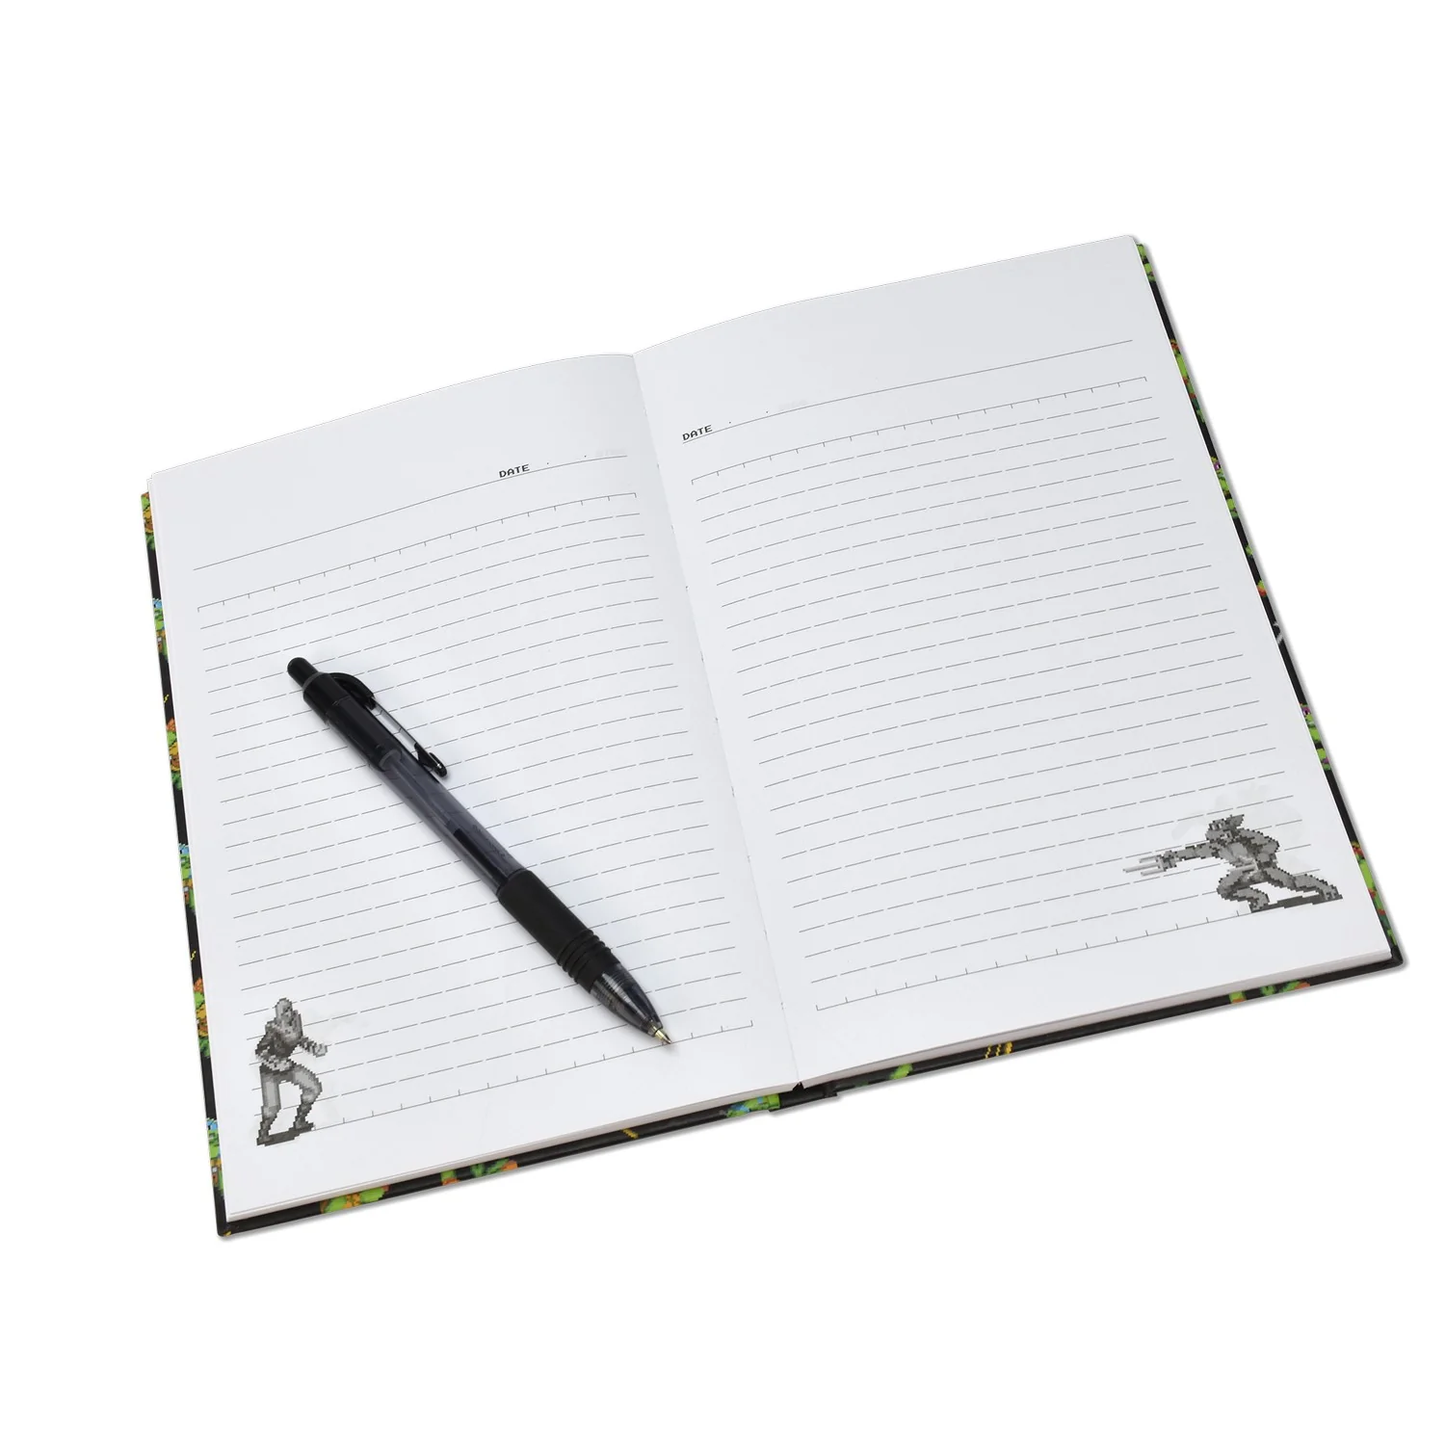 TMNT - Notebook Premium